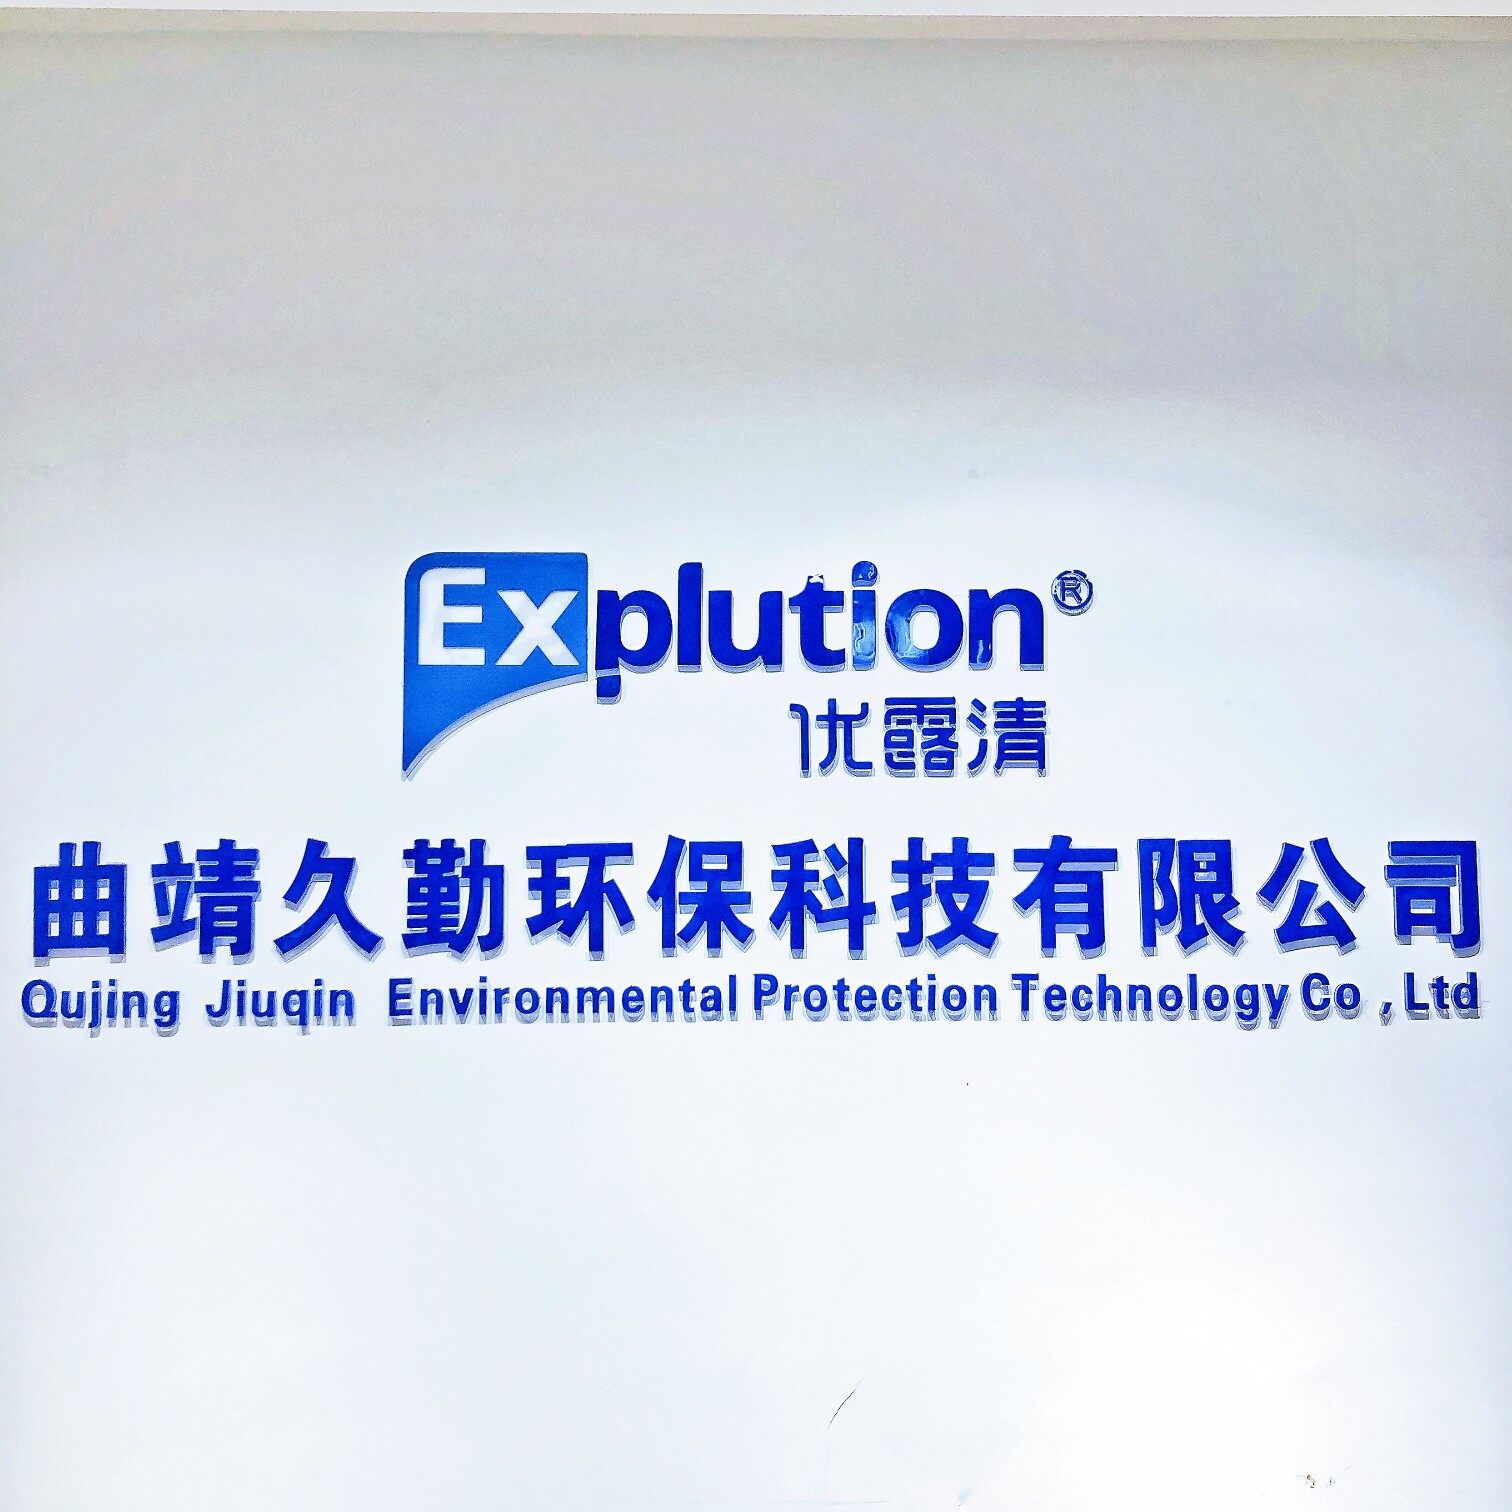 曲靖久勤环保科技有限公司logo